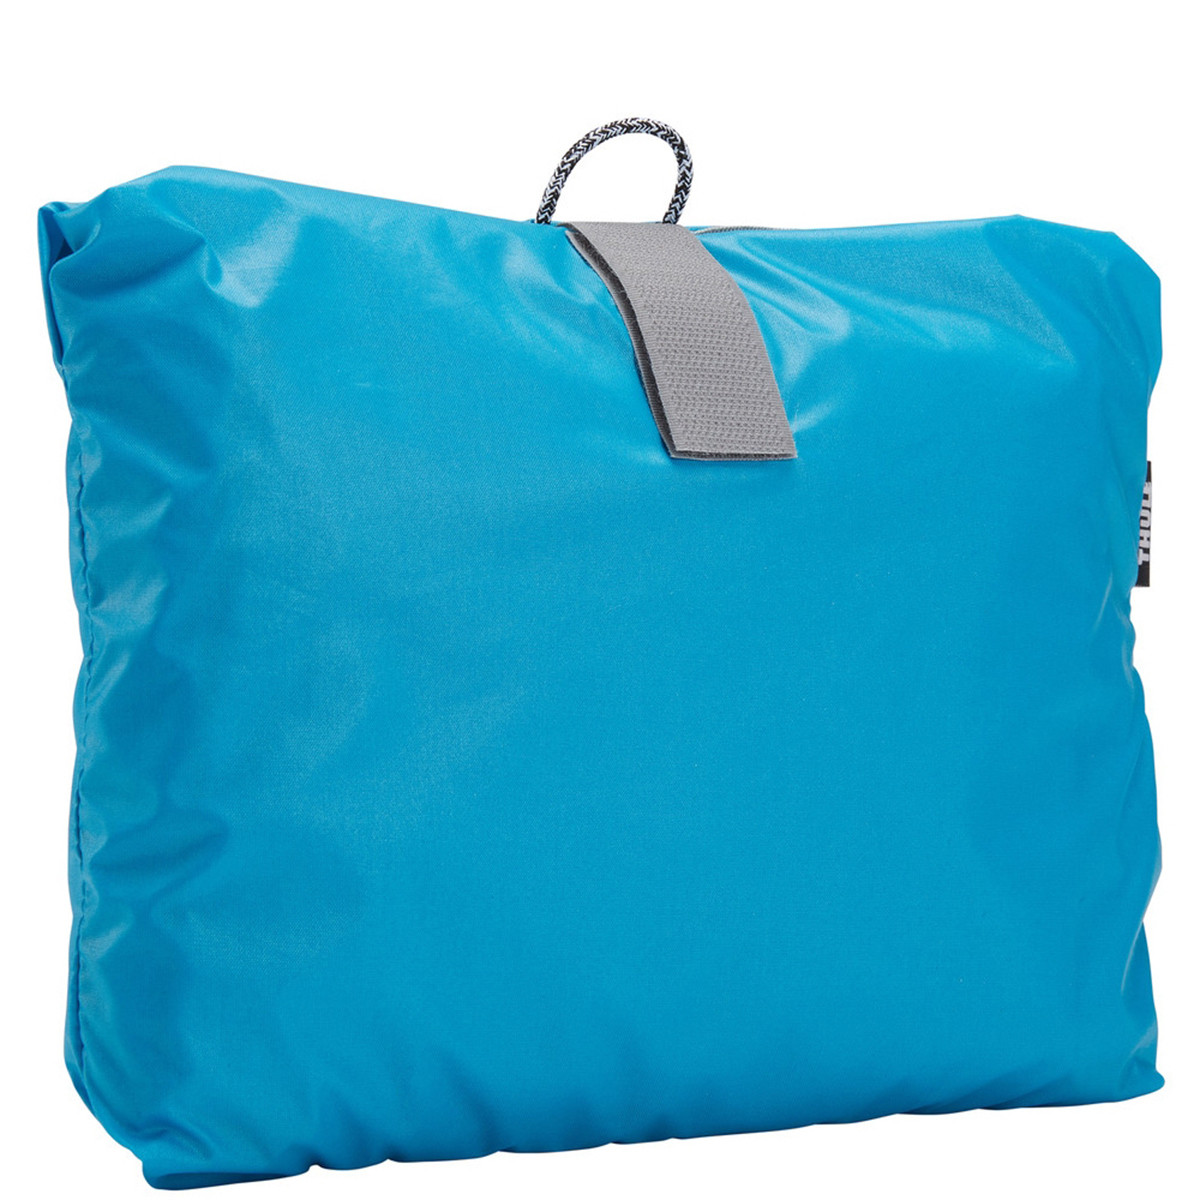 Husa de protectie ploaie pentru rucsacuri transport copii, Thule, Sapling Child Carrier, Albastru deschis